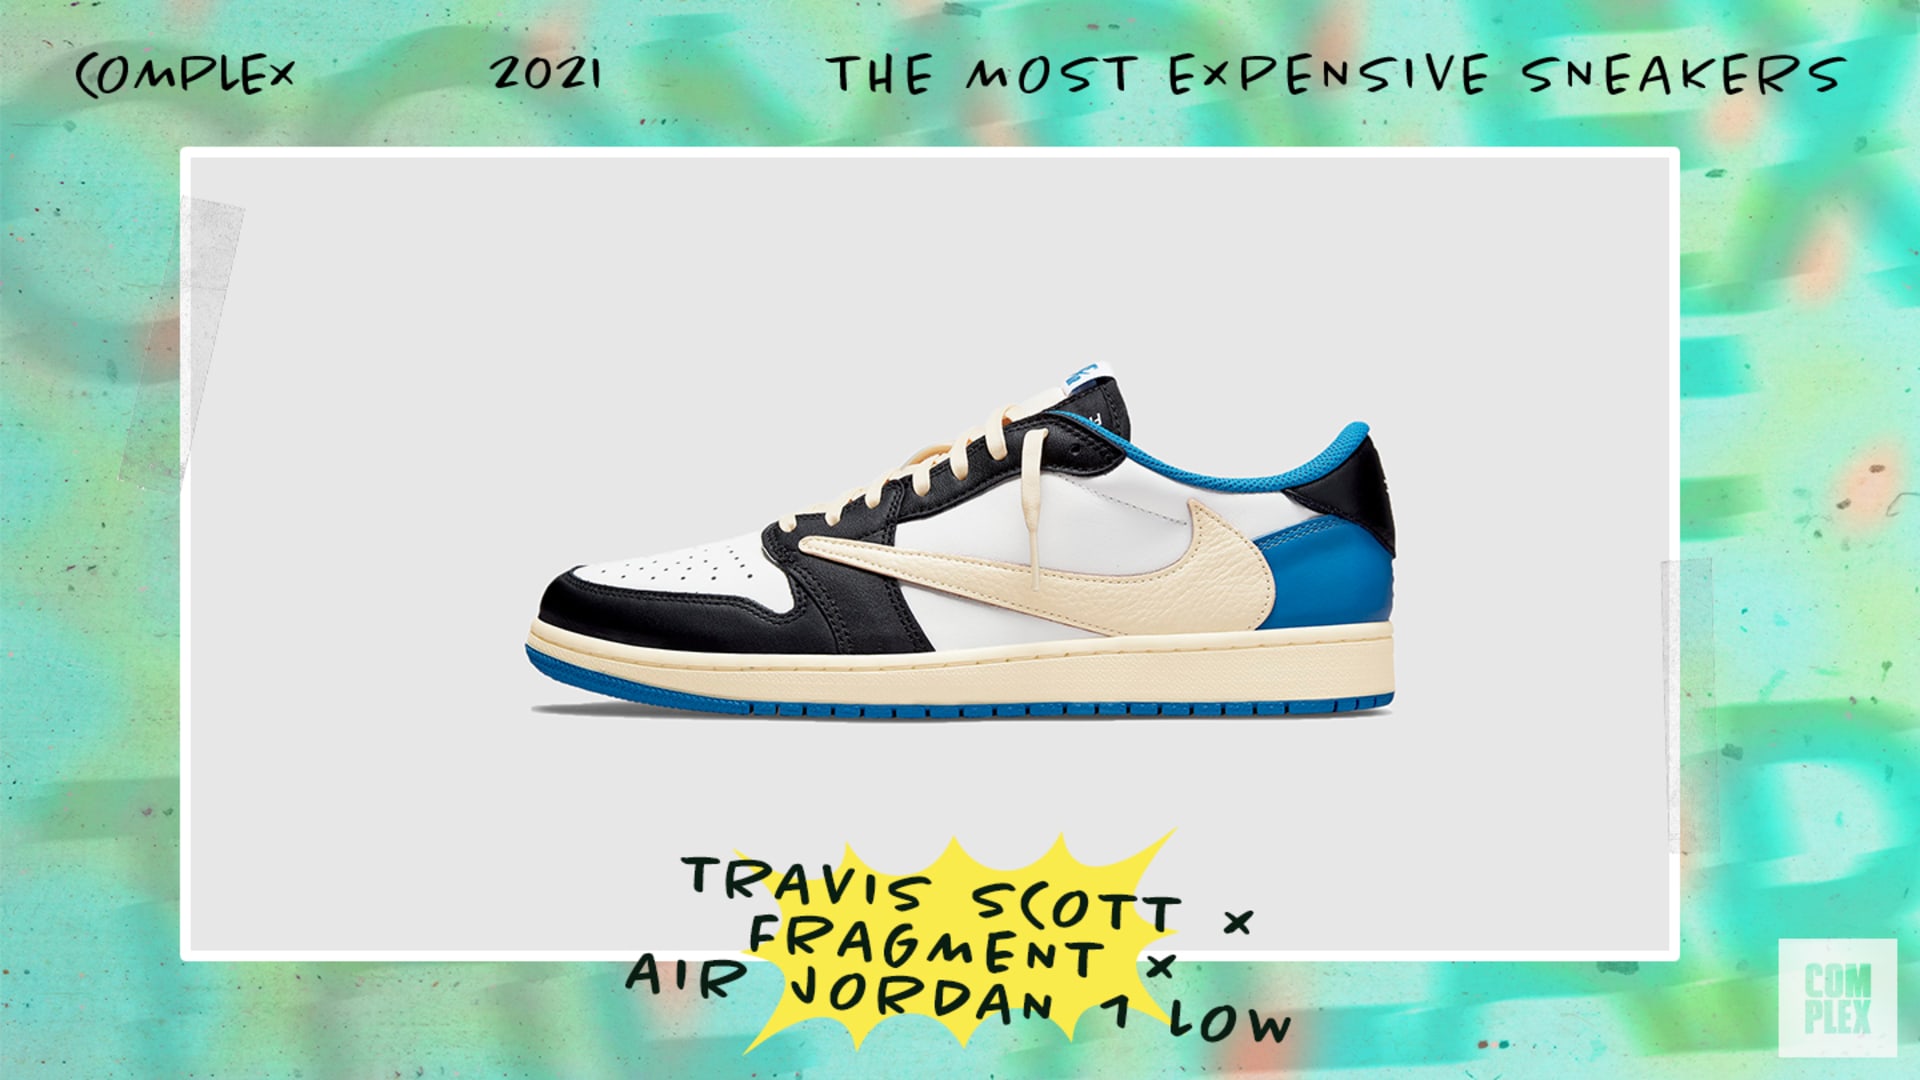 Travis Scott x Fragment x Air Jordan 1 Low